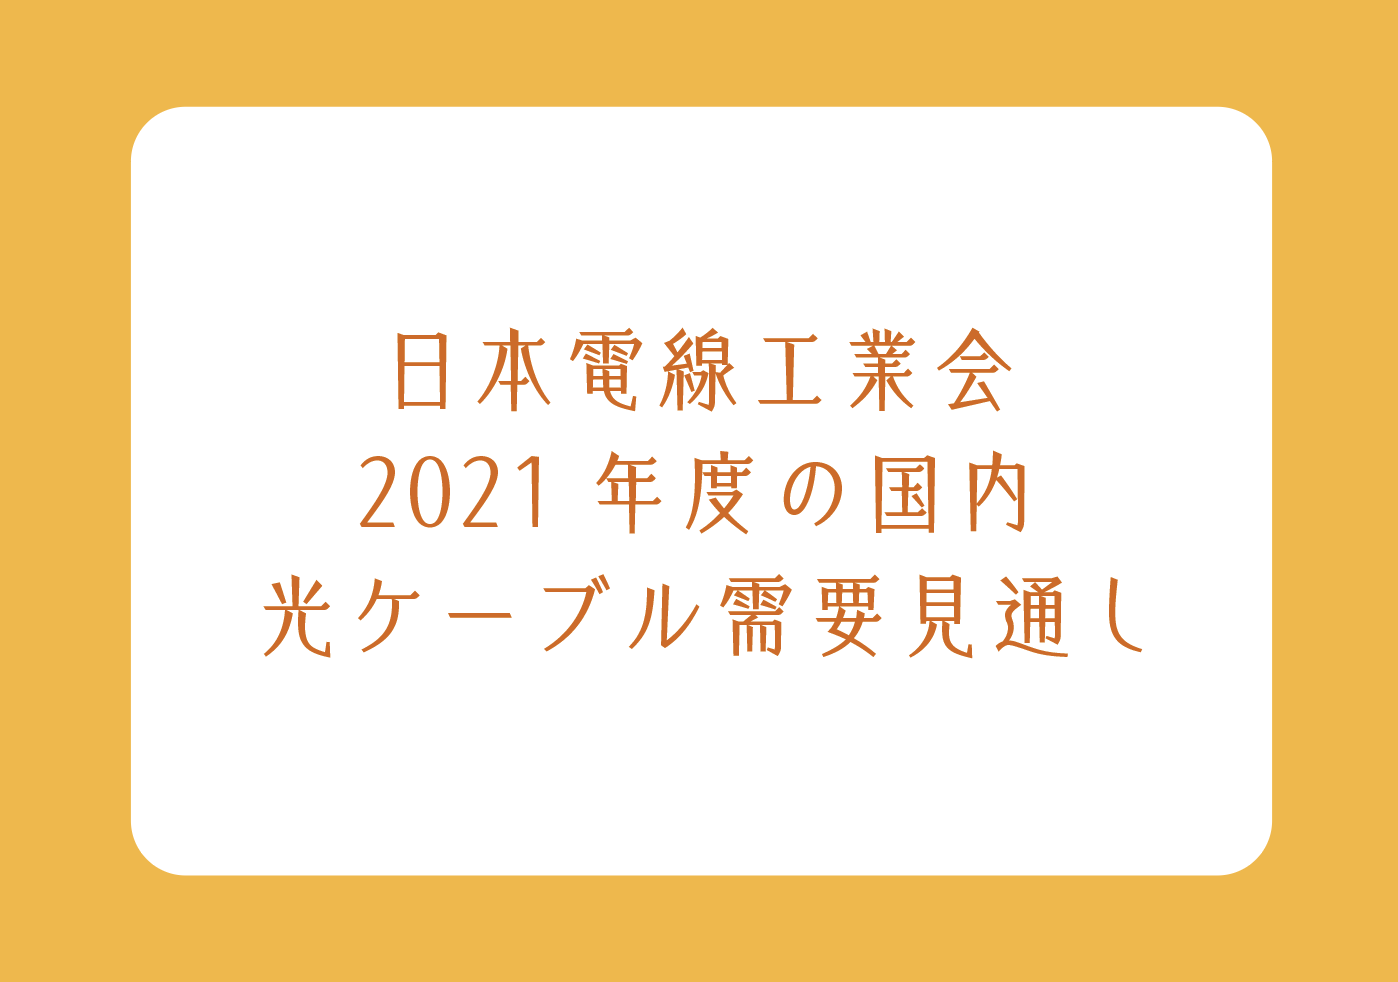 日本電線工業会 2021年度の国内 光ケーブル需要見通しの画像